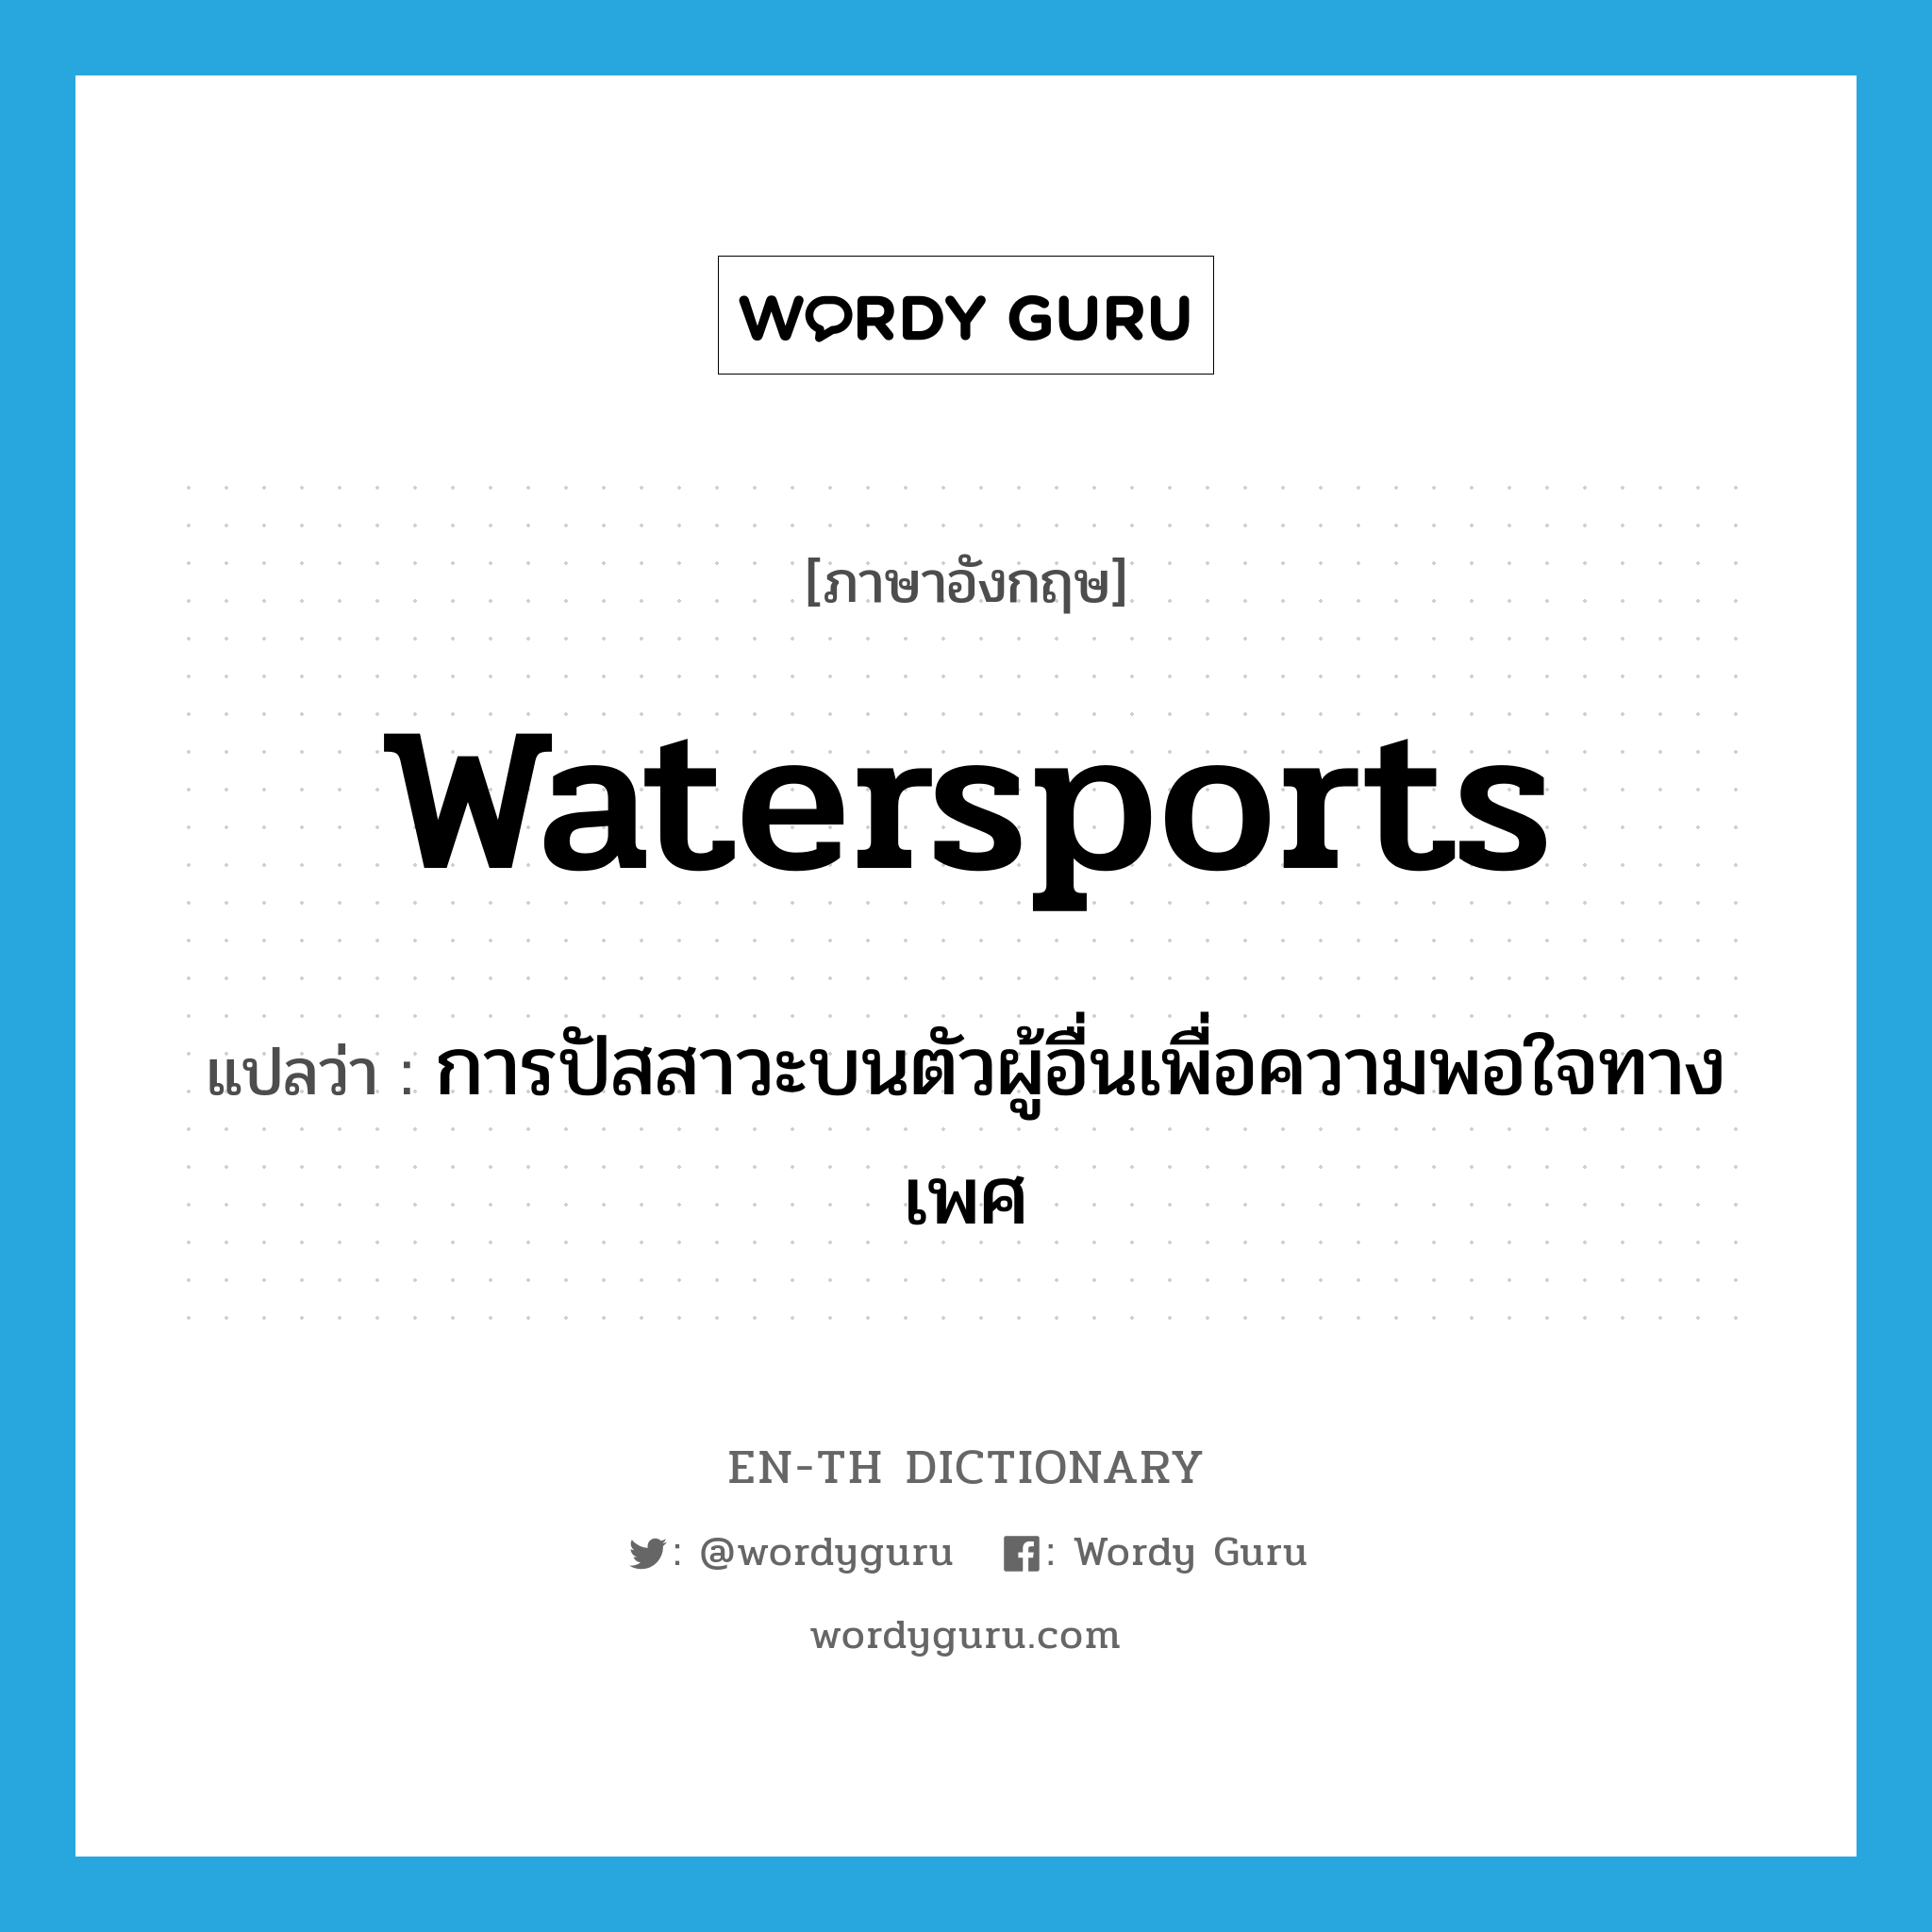 watersports แปลว่า?, คำศัพท์ภาษาอังกฤษ watersports แปลว่า การปัสสาวะบนตัวผู้อื่นเพื่อความพอใจทางเพศ ประเภท SL หมวด SL